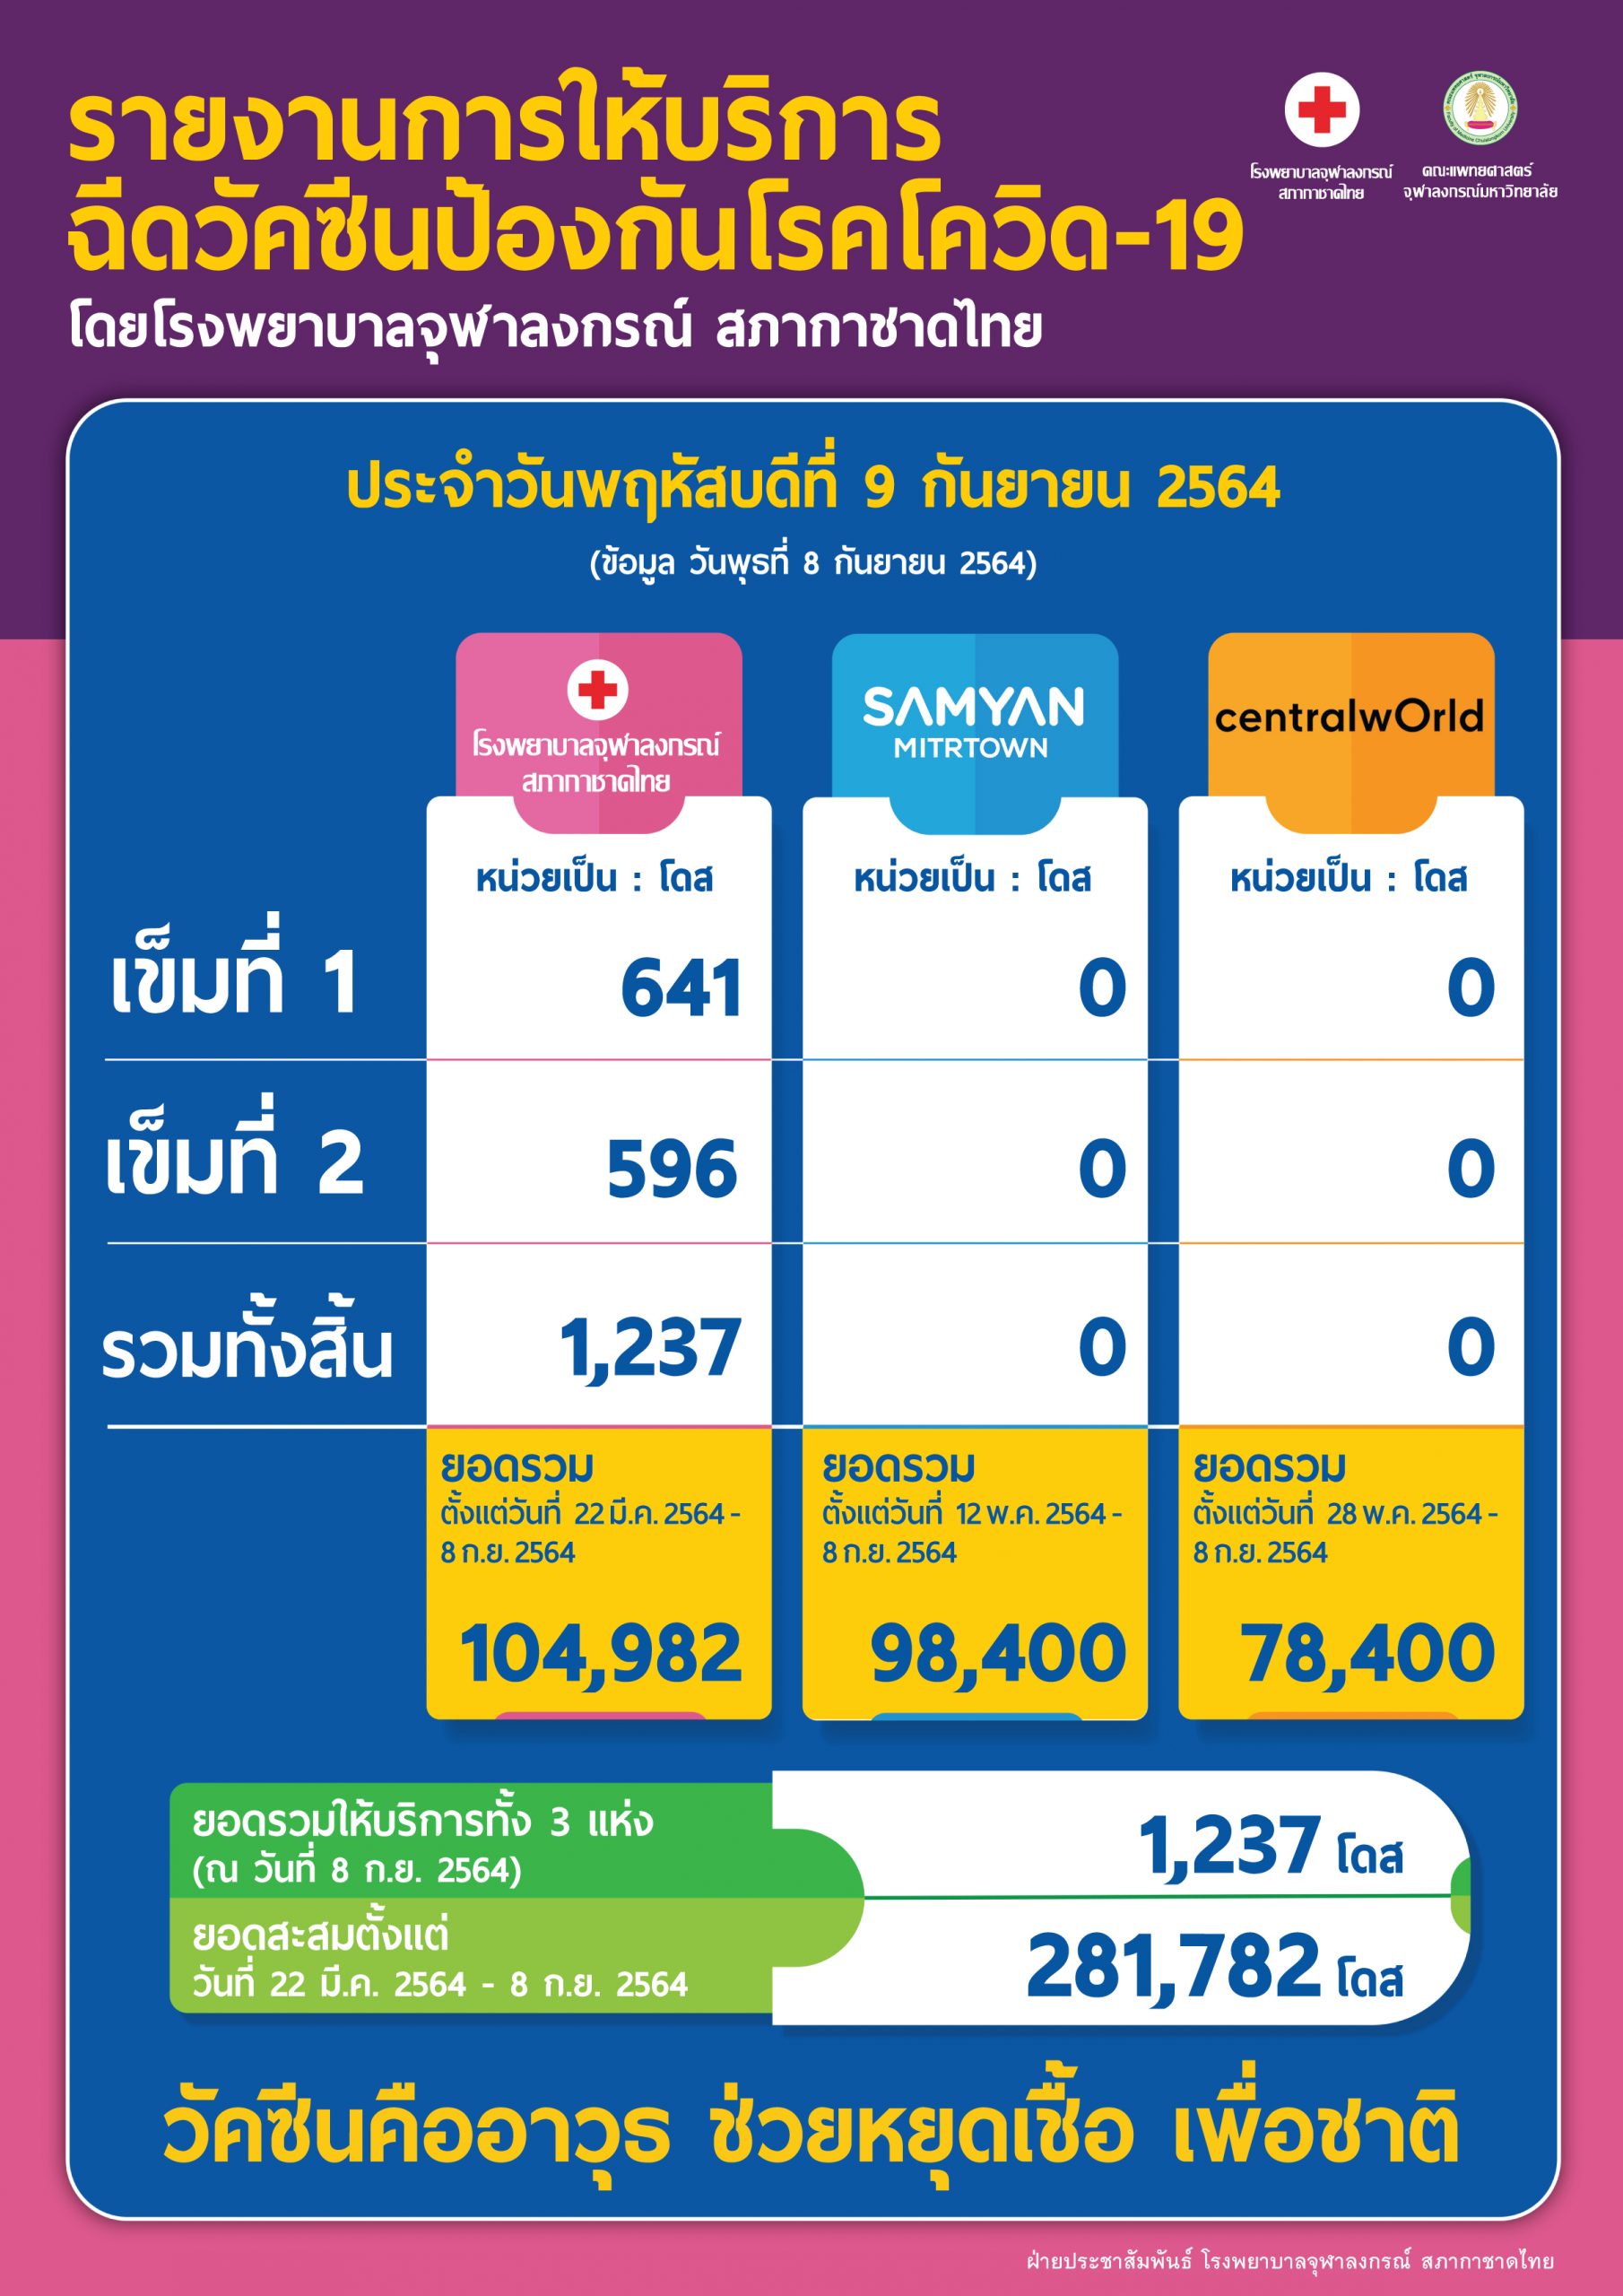 รายงานการให้บริการฉีดวัคซีนป้องกันโรคโควิด-19 โดยโรงพยาบาลจุฬาลงกรณ์ สภากาชาดไทย ประจำวันพฤหัสบดีที่ 9 กันยายน 2564